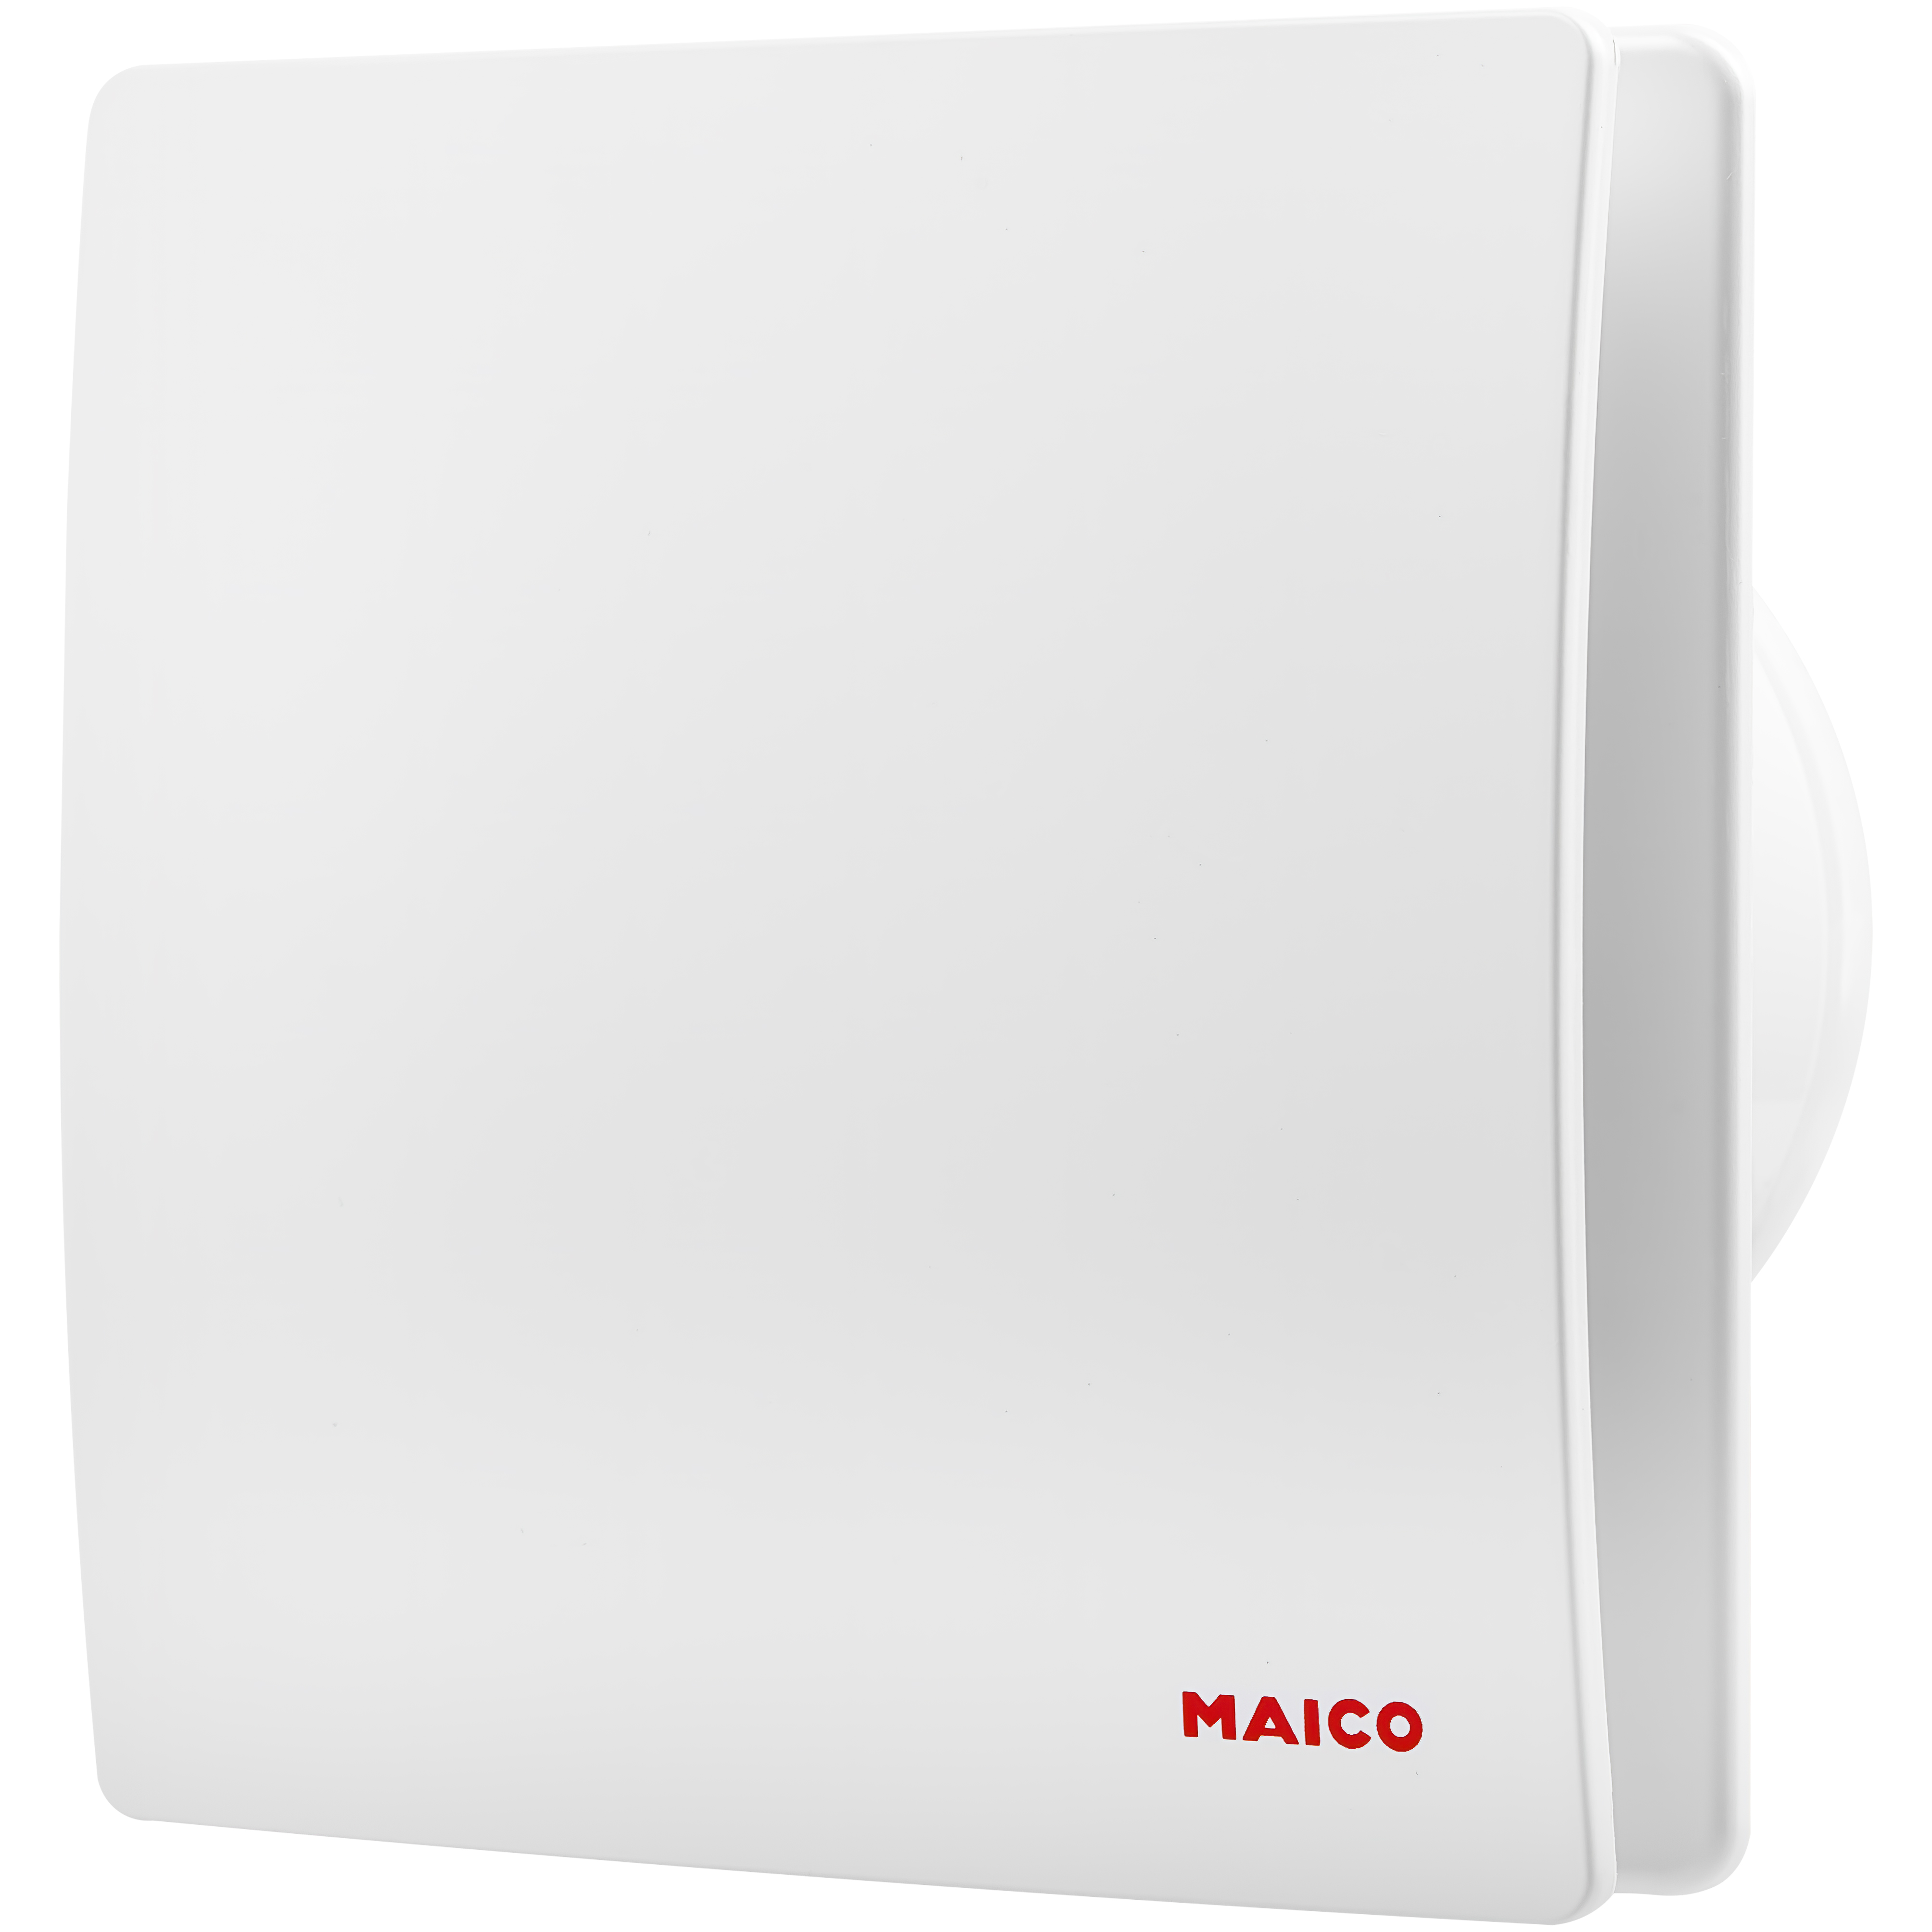 Вентилятор Maico вытяжной Maico AWB 100 C